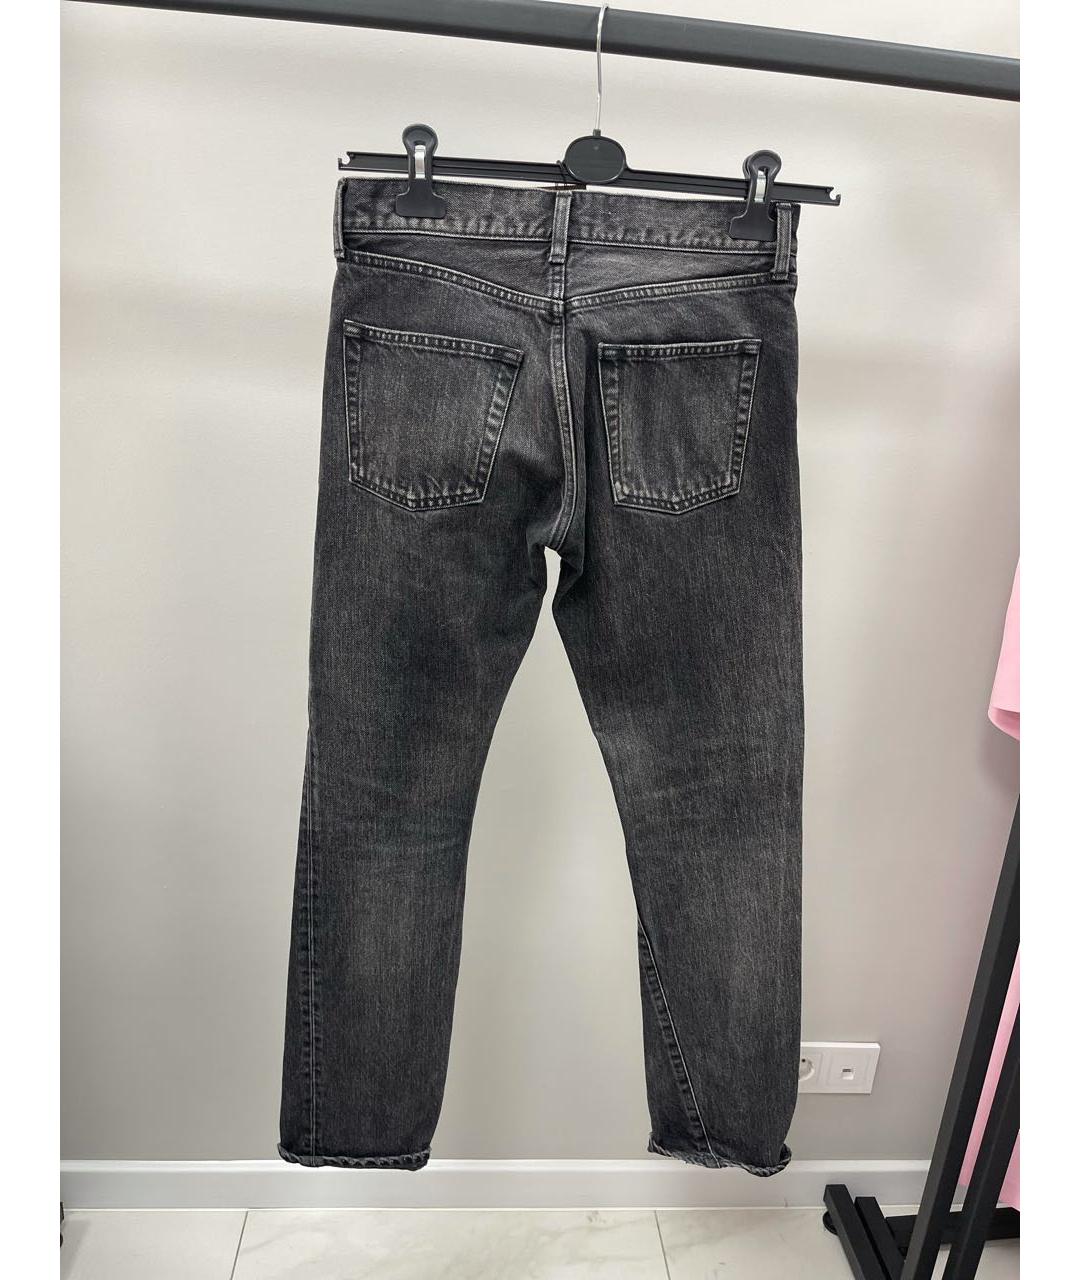 BALENCIAGA Антрацитовые хлопковые прямые джинсы, фото 2